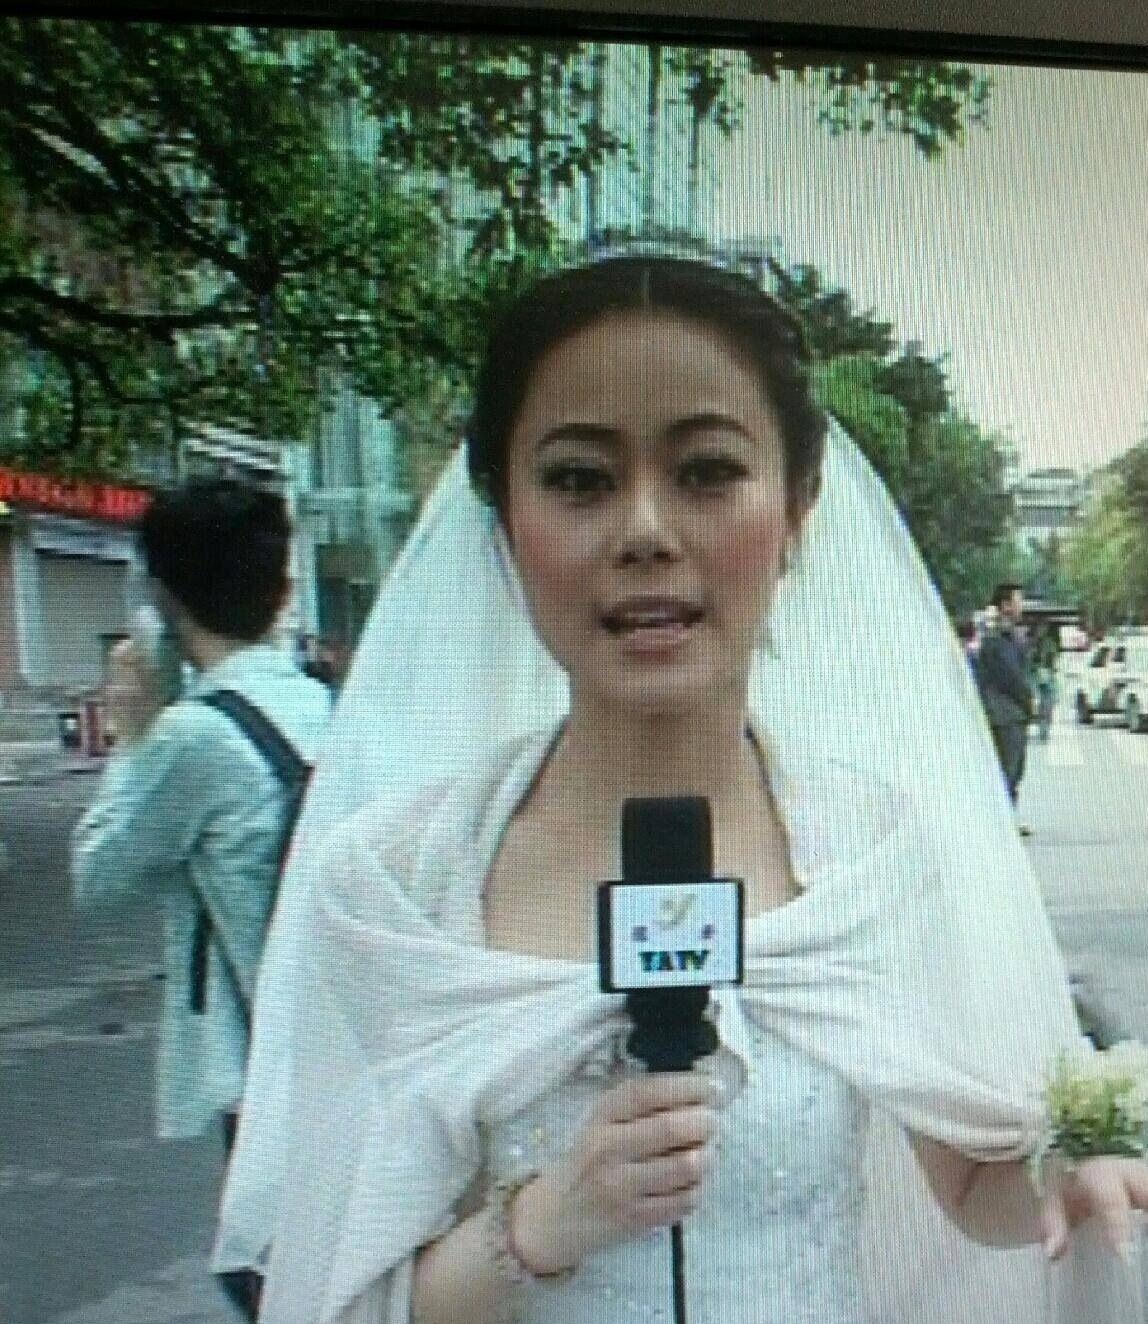 雅安电视台记者穿婚纱_雅安电视台女记者穿婚纱报道地震